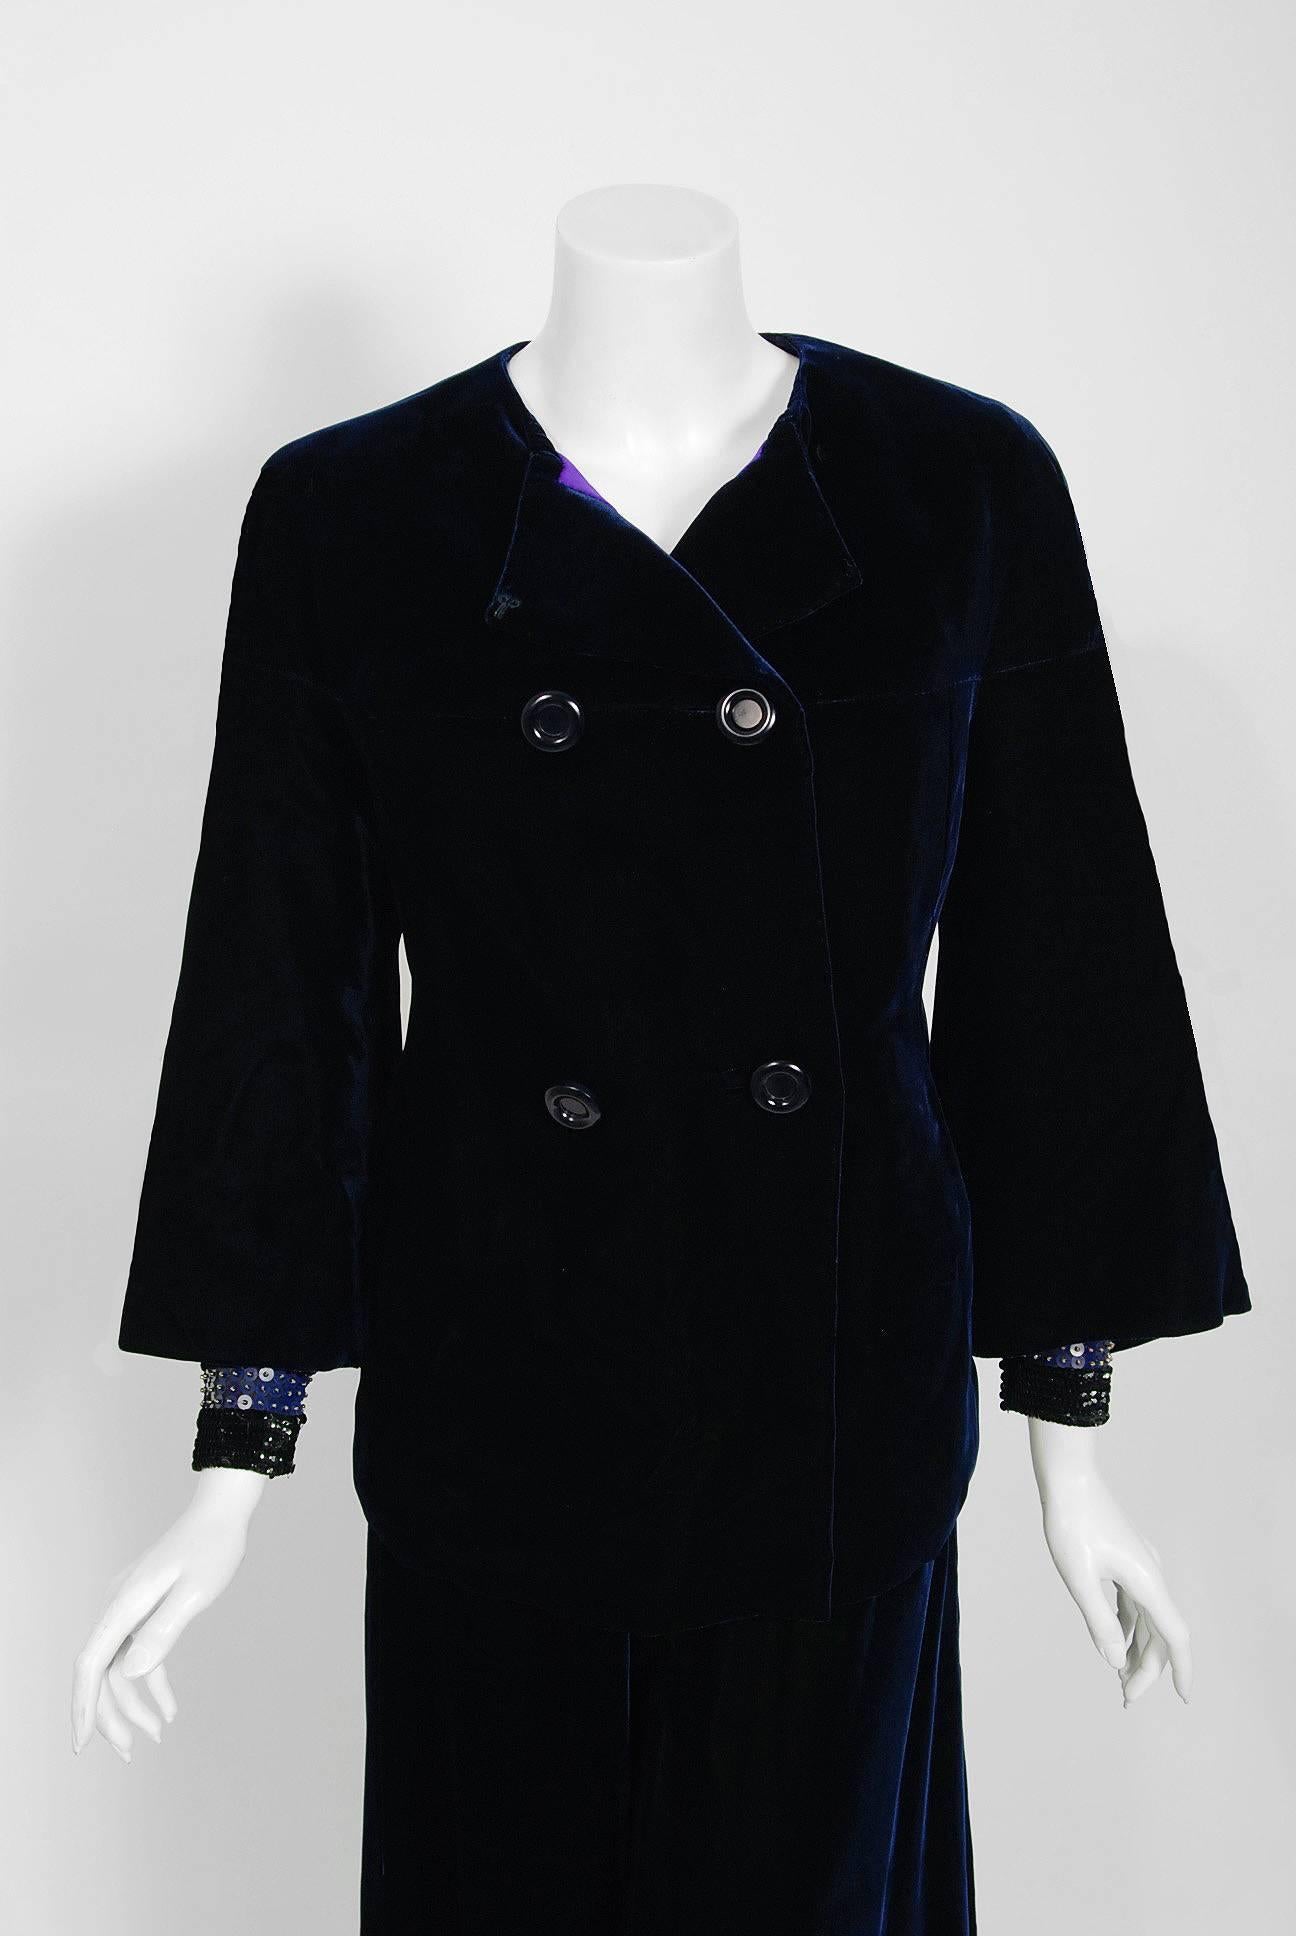 Black Vintage 1971 Pierre Balmain Haute Couture Beaded Blue Velvet Jumpsuit and Jacket For Sale